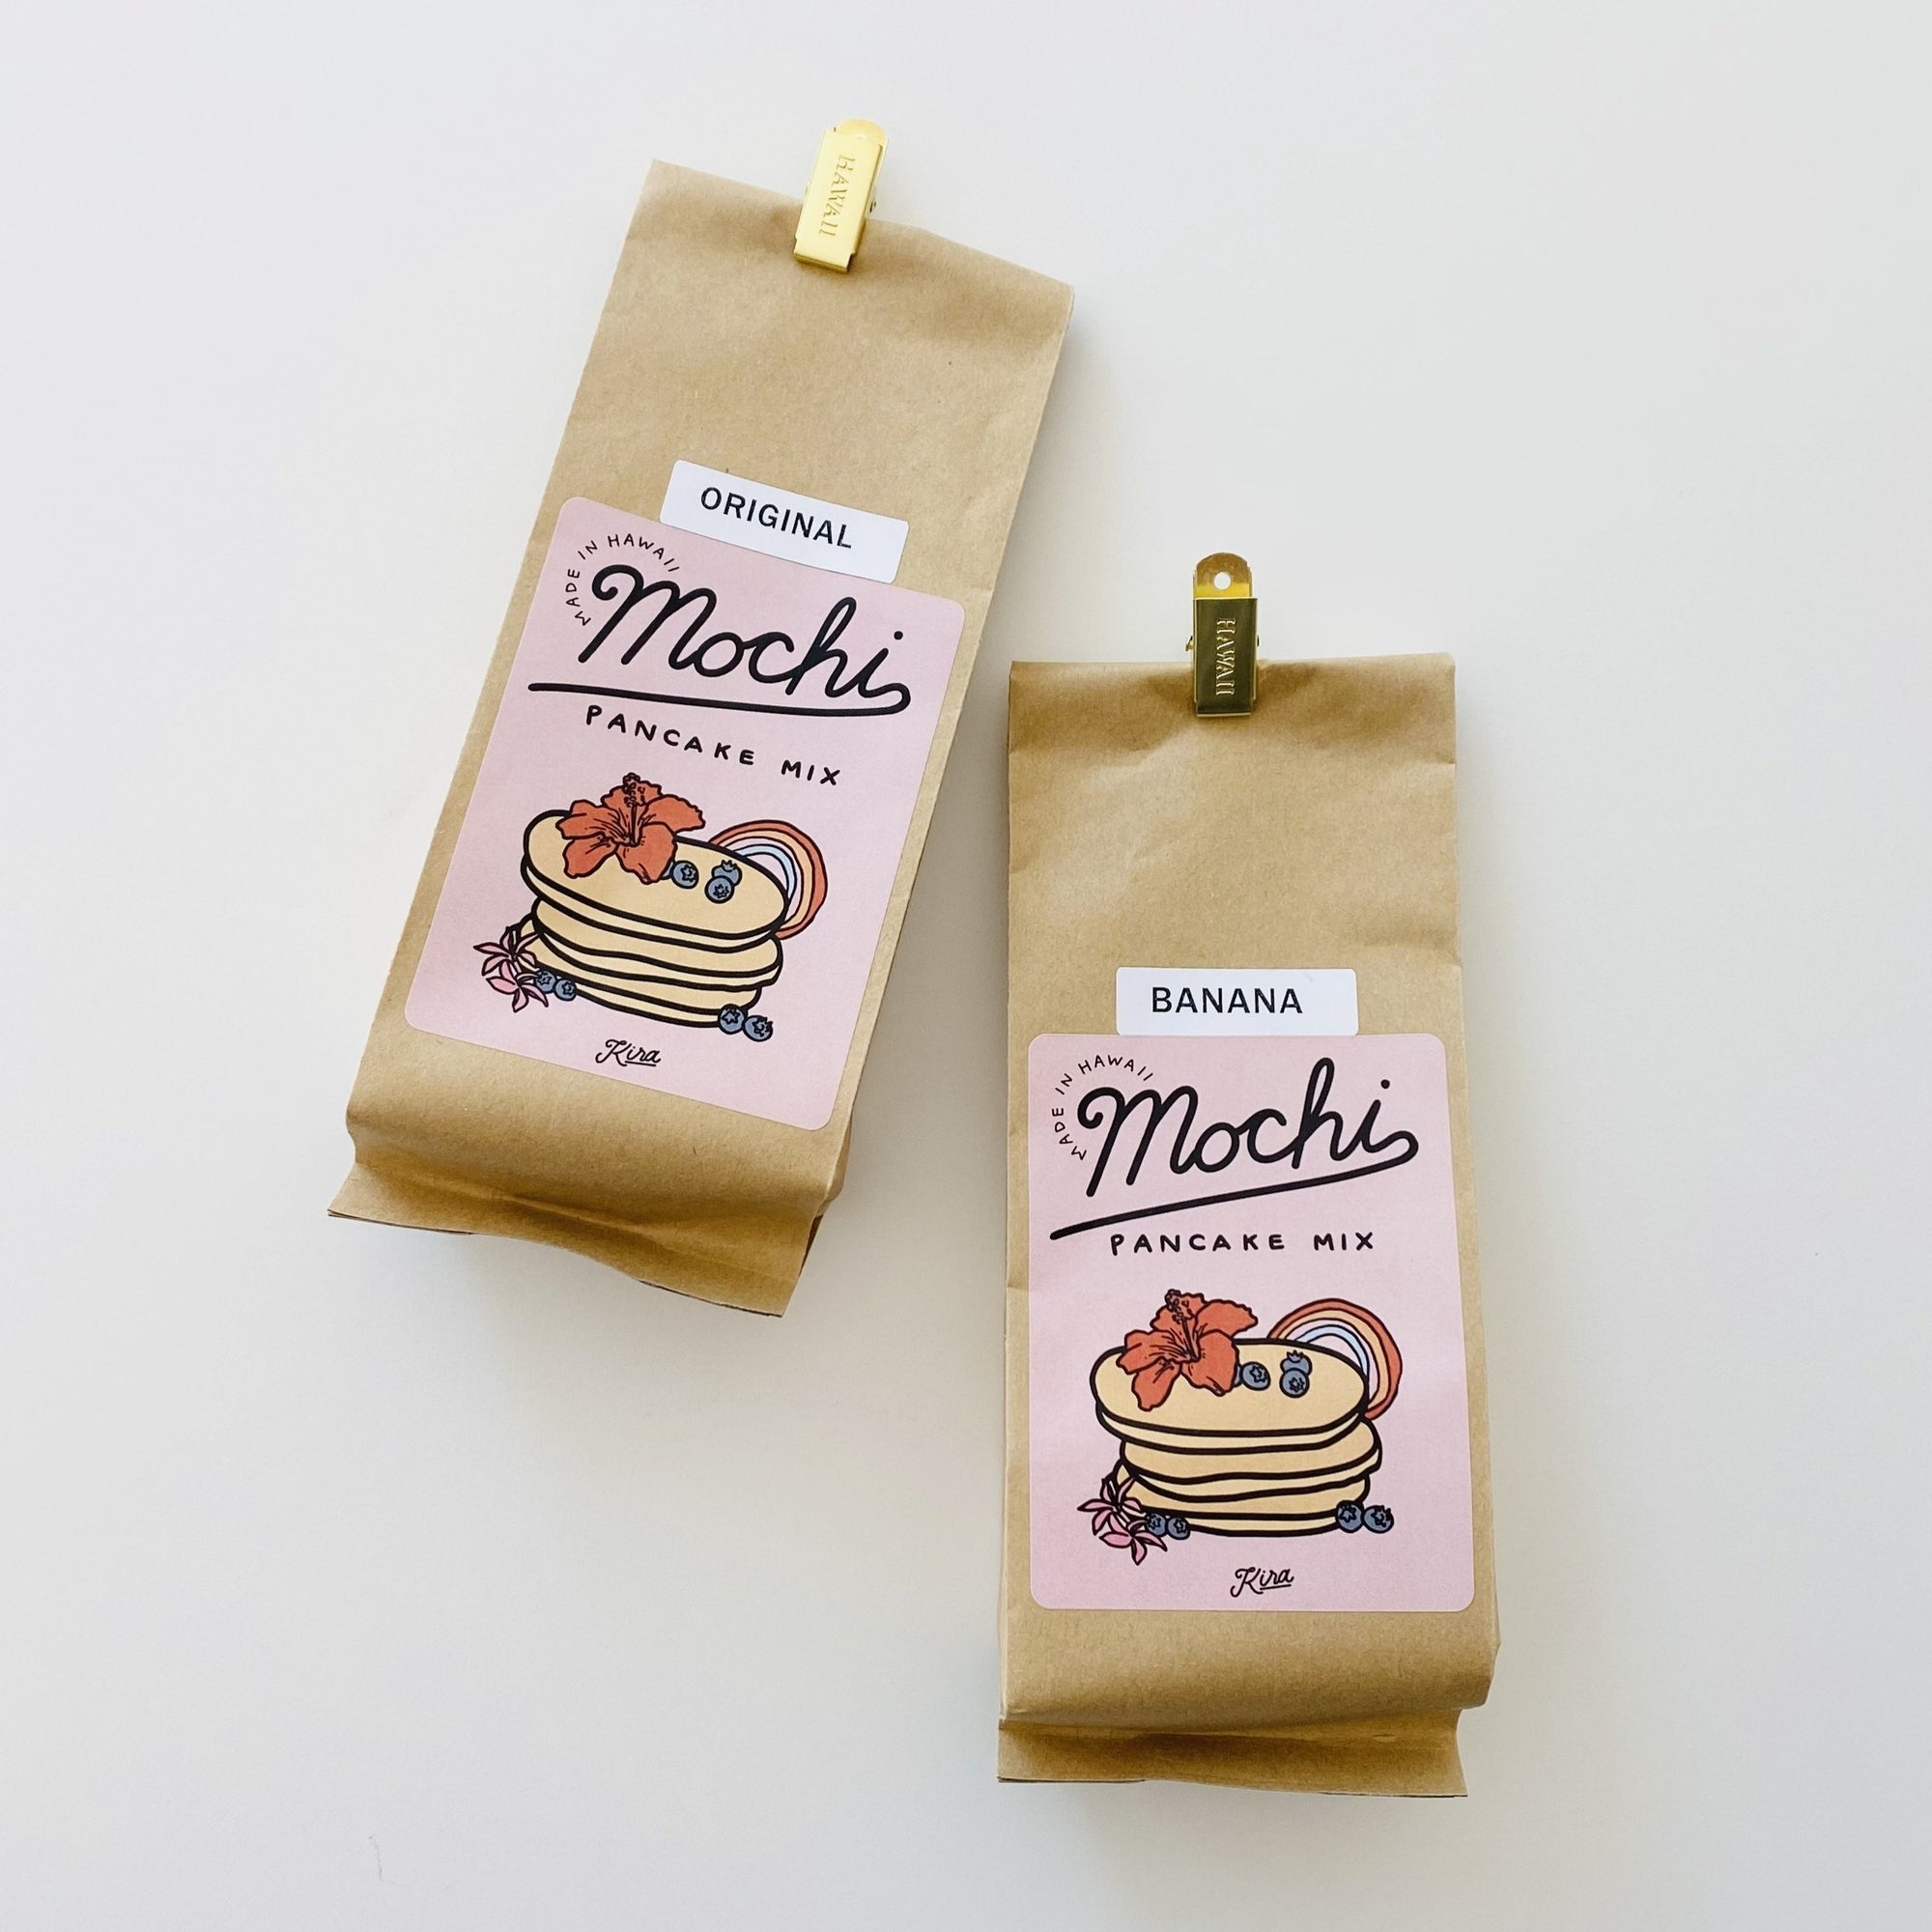 Mochi Pancake Mix by Kira